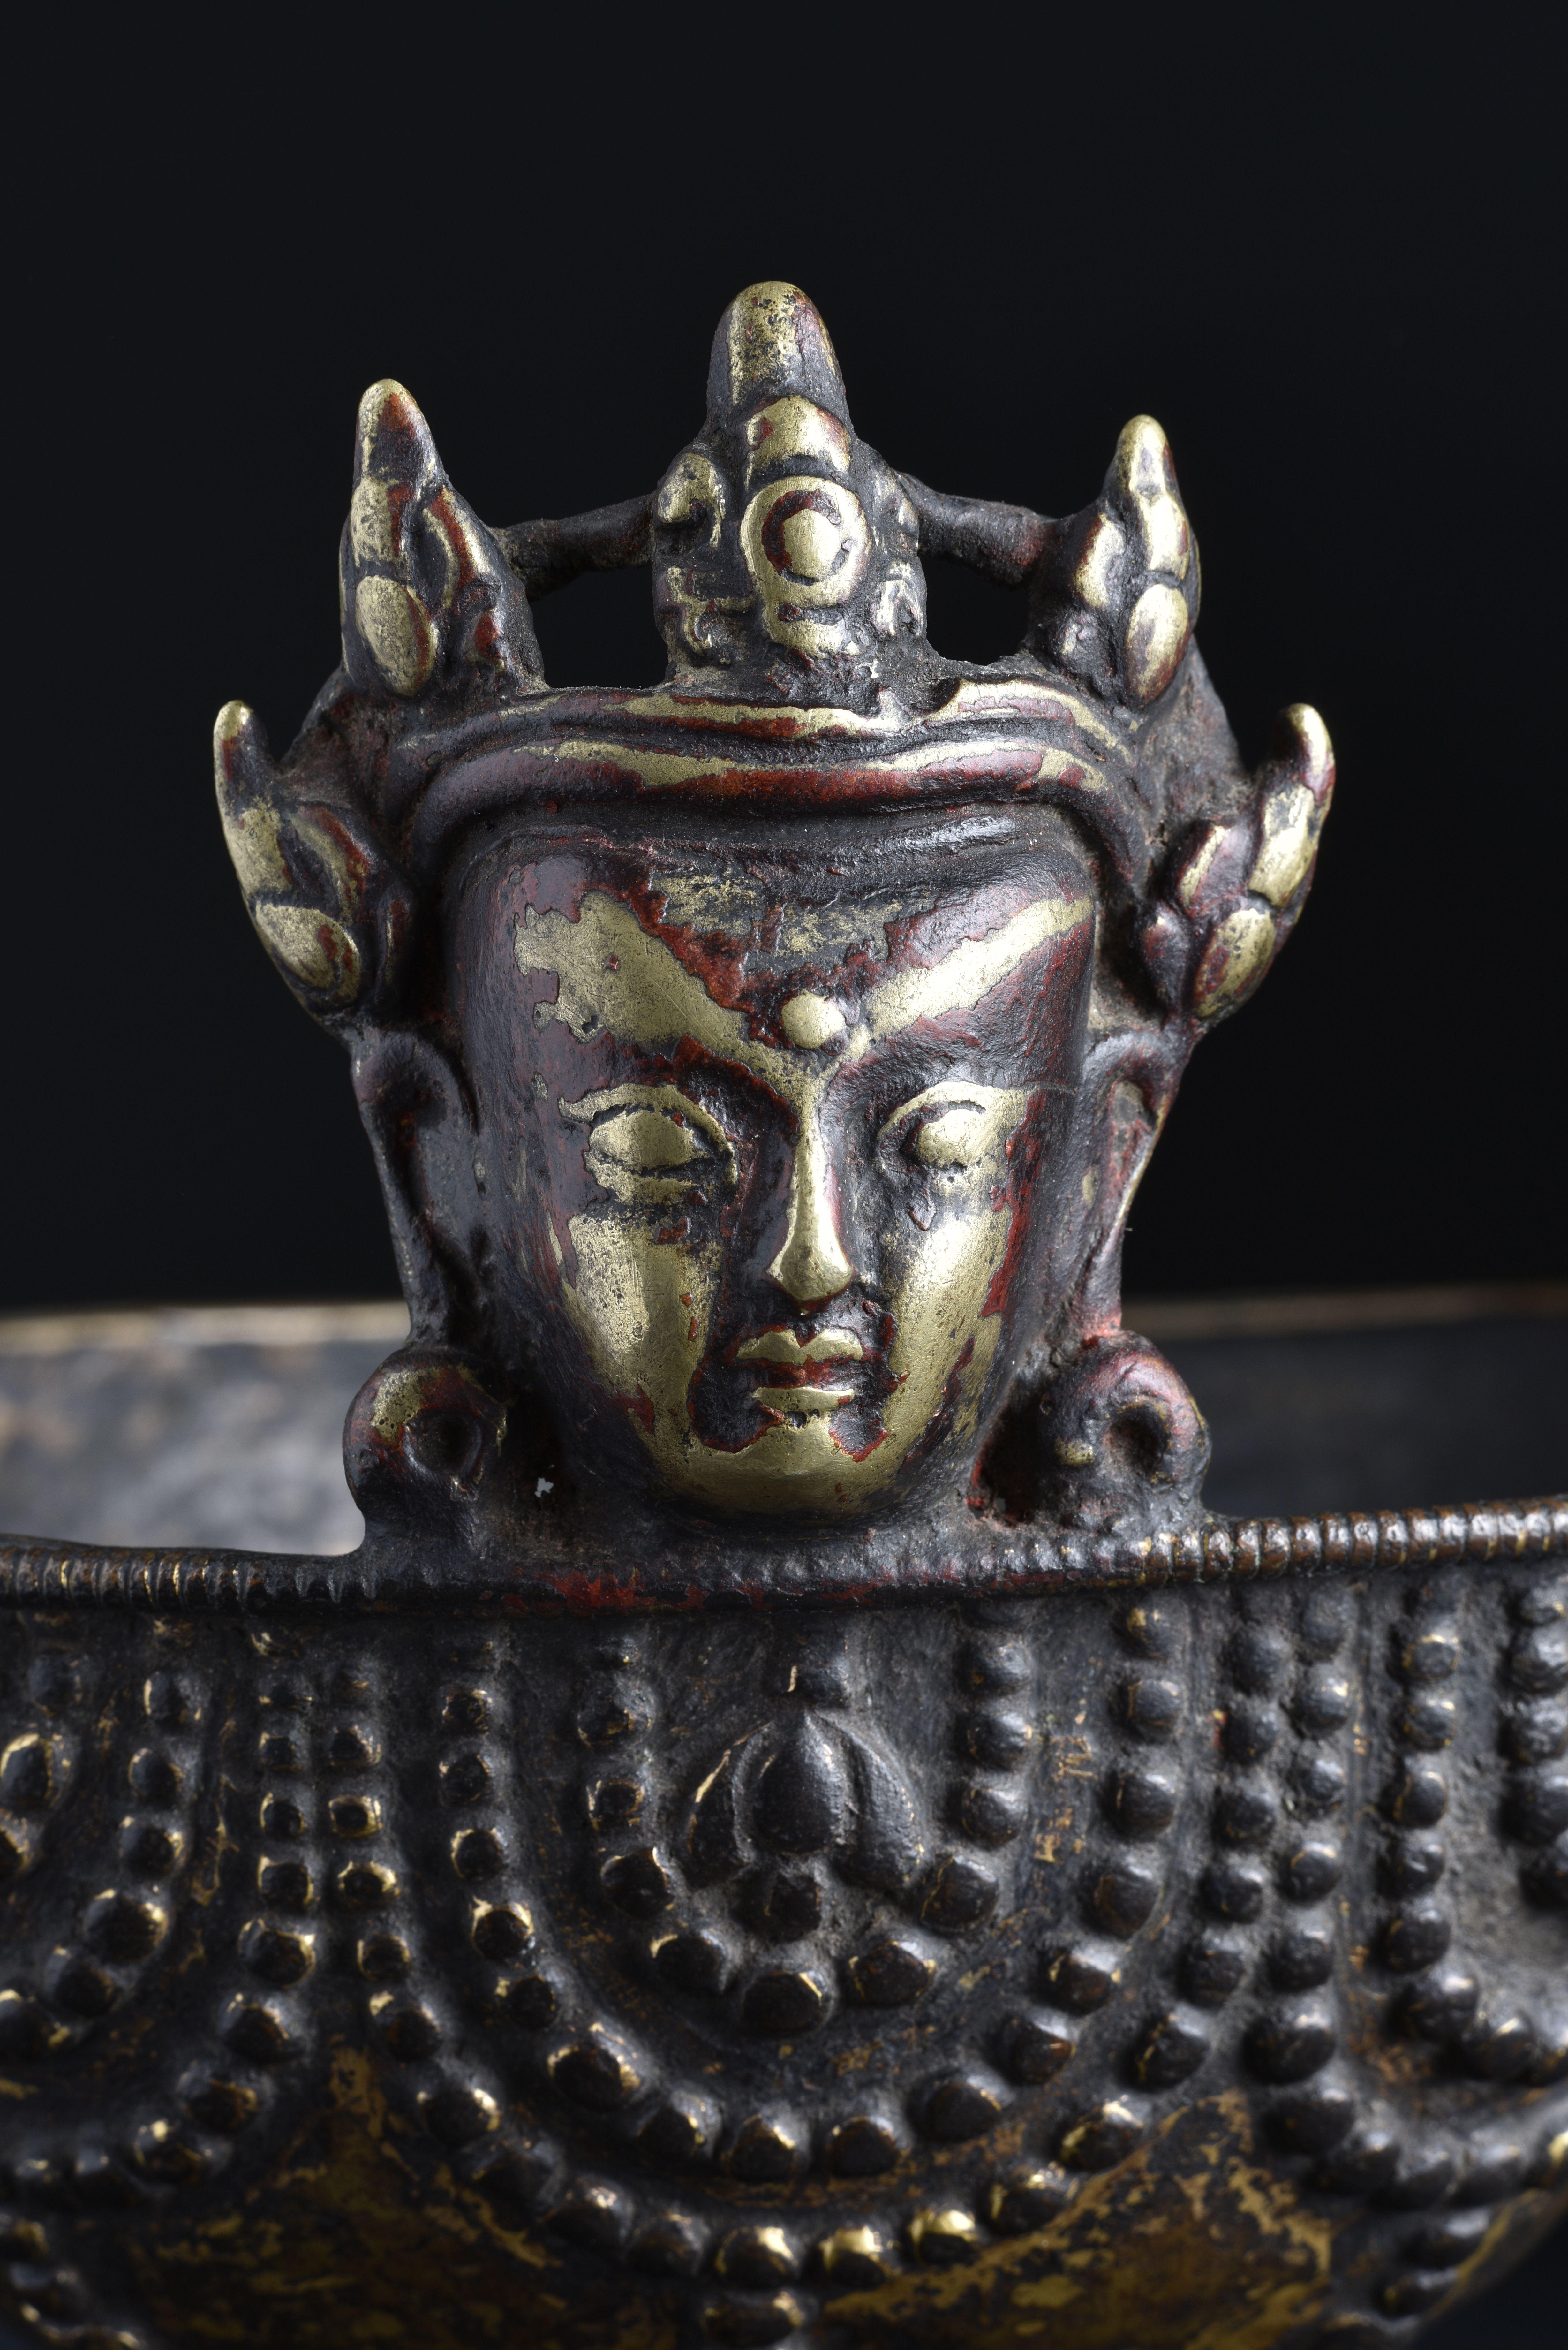  16/17thc Tibetan Bronze Skull Cup - 9026 In Good Condition For Sale In Ukiah, CA